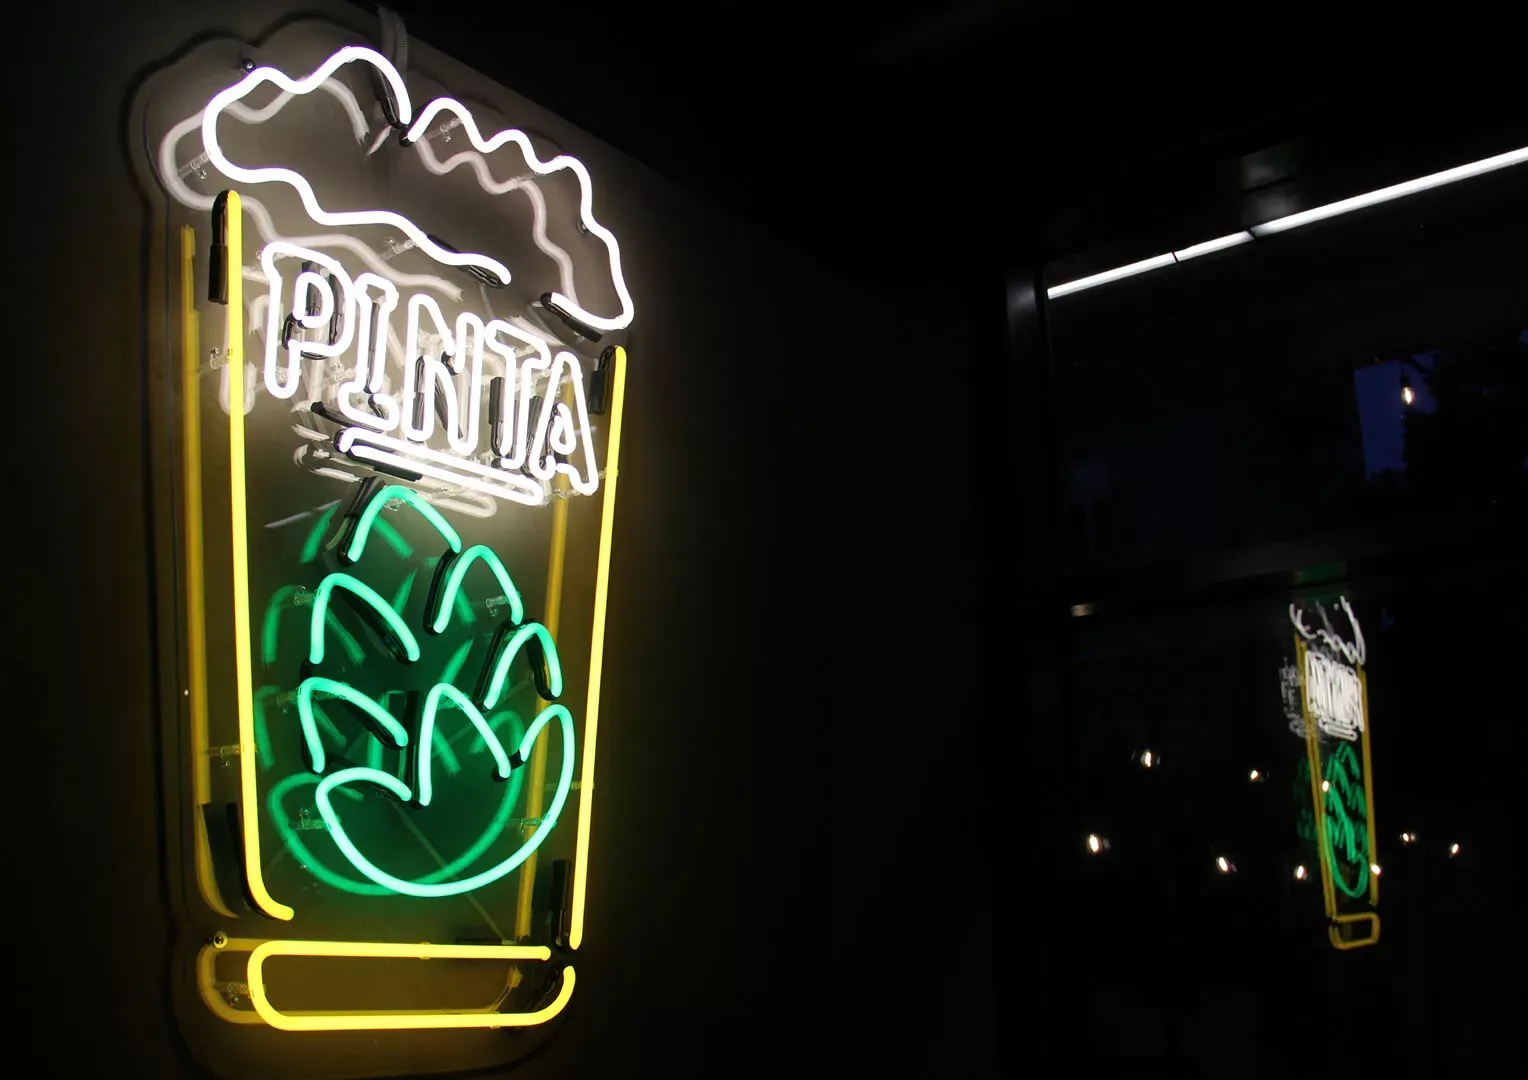 Pinta - neonbord in de vorm van een glas met een inscriptie